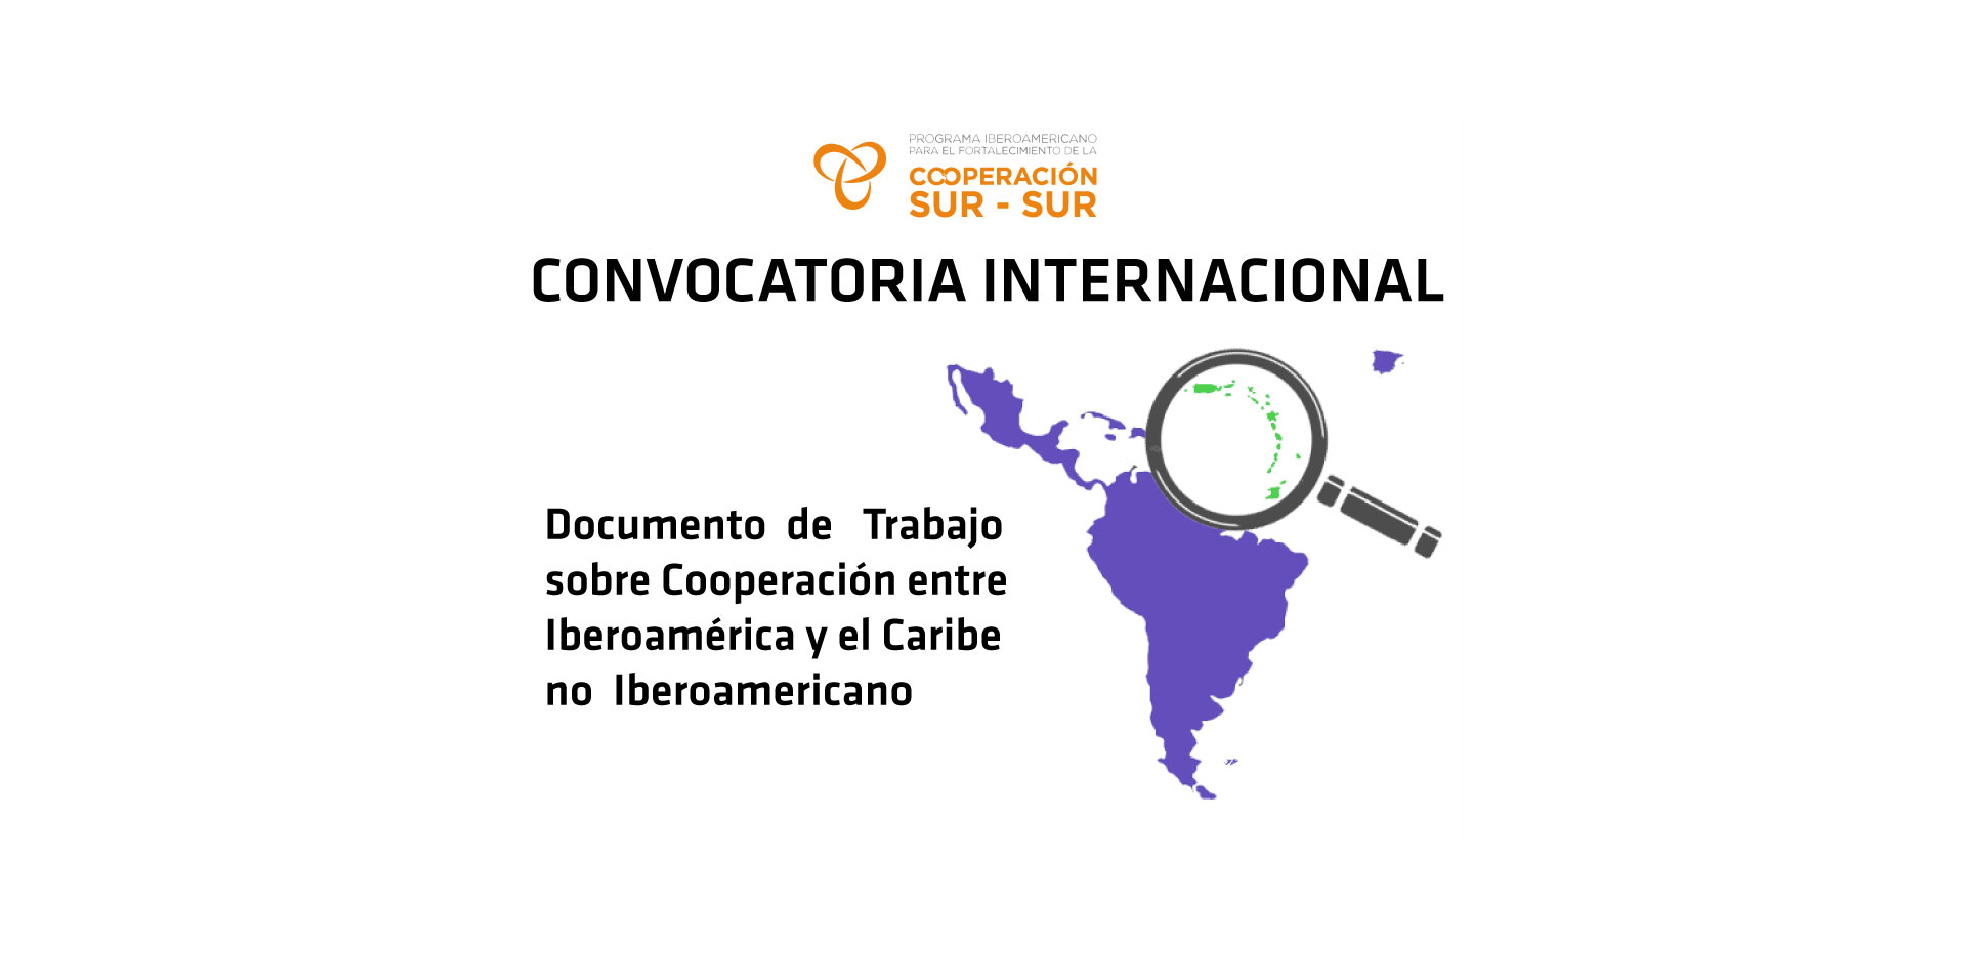 Abierta convocatoria internacional de elaboración de documento de trabajo sobre cooperación entre Iberoamérica y el Caribe no Iberoamerican